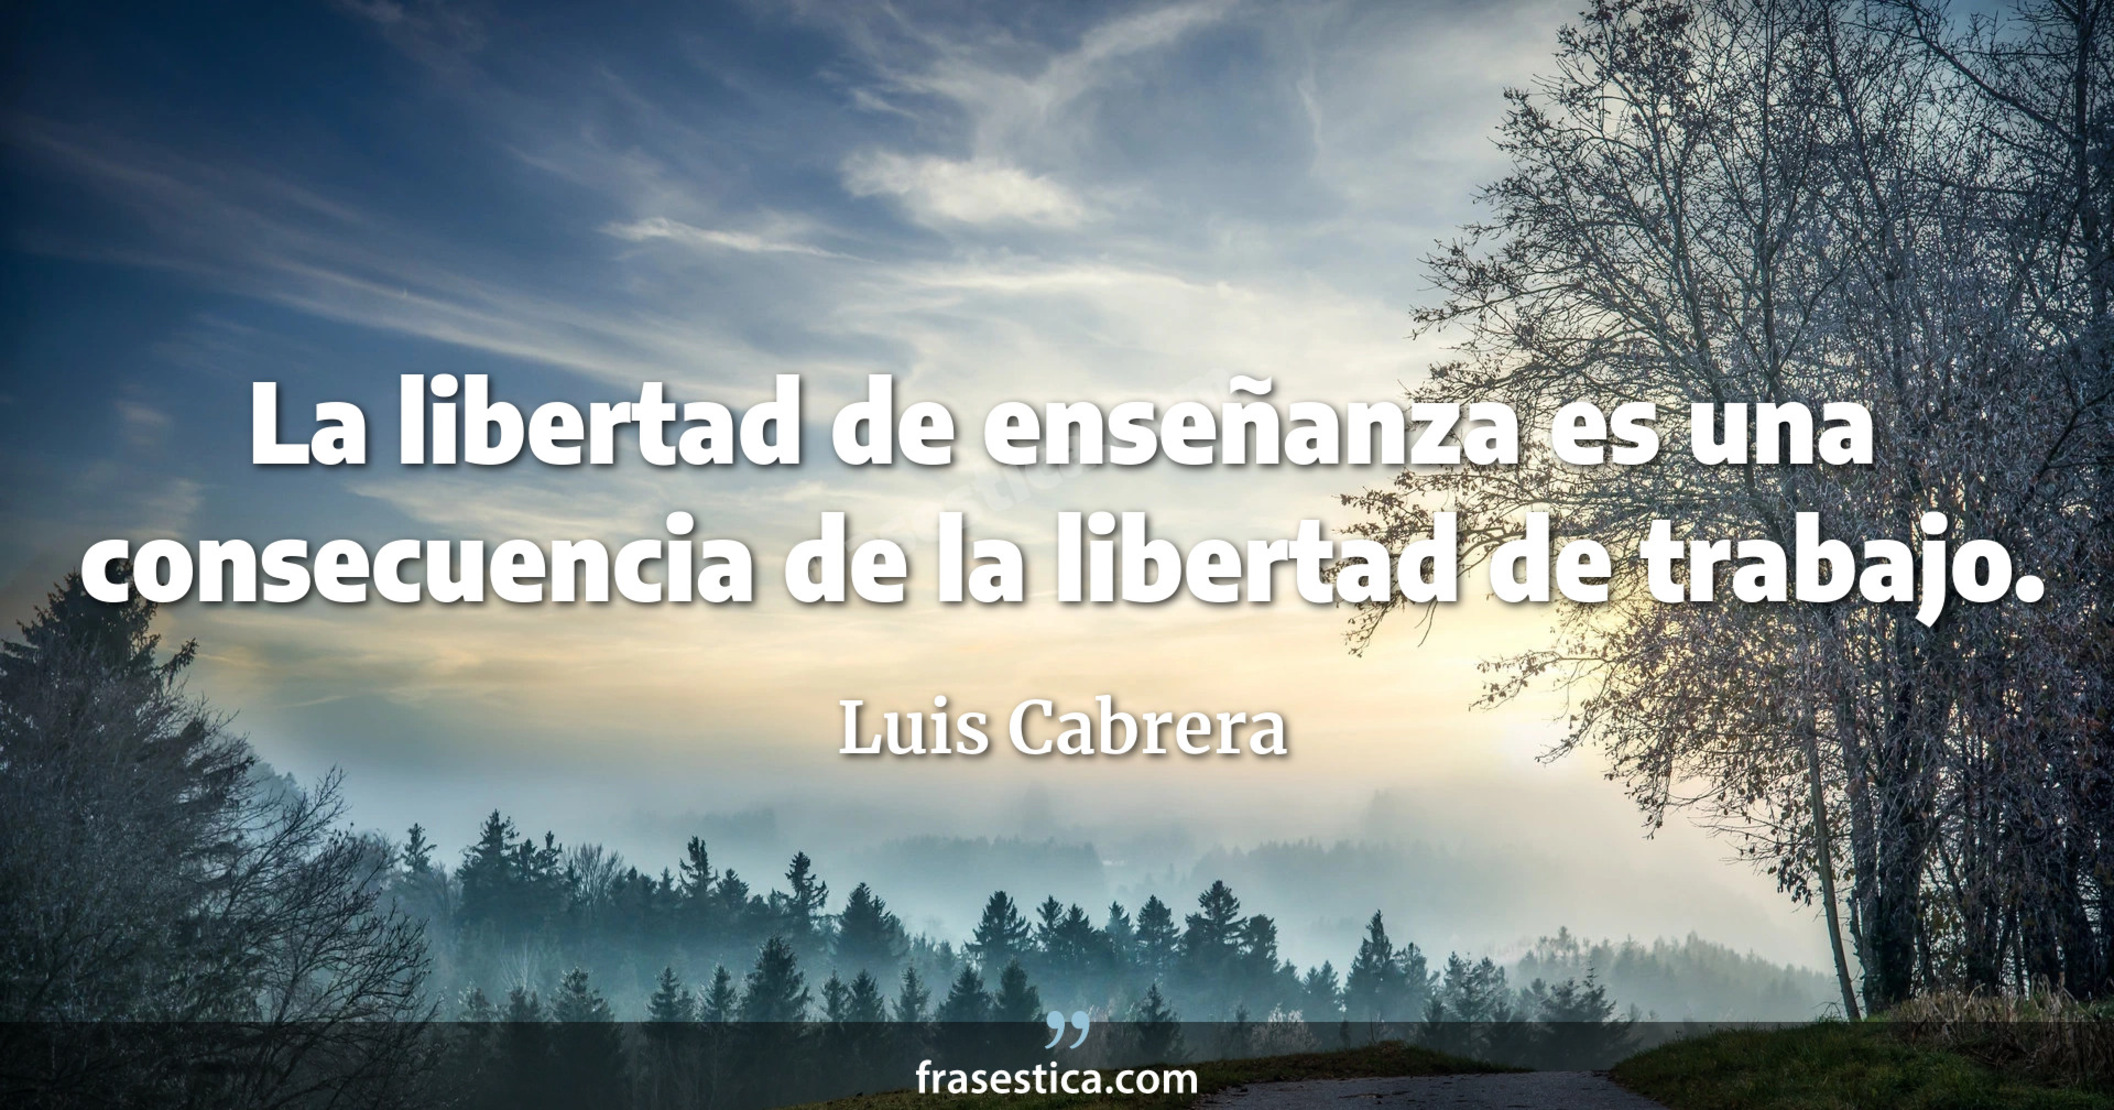 La libertad de enseñanza es una consecuencia de la libertad de trabajo. - Luis Cabrera